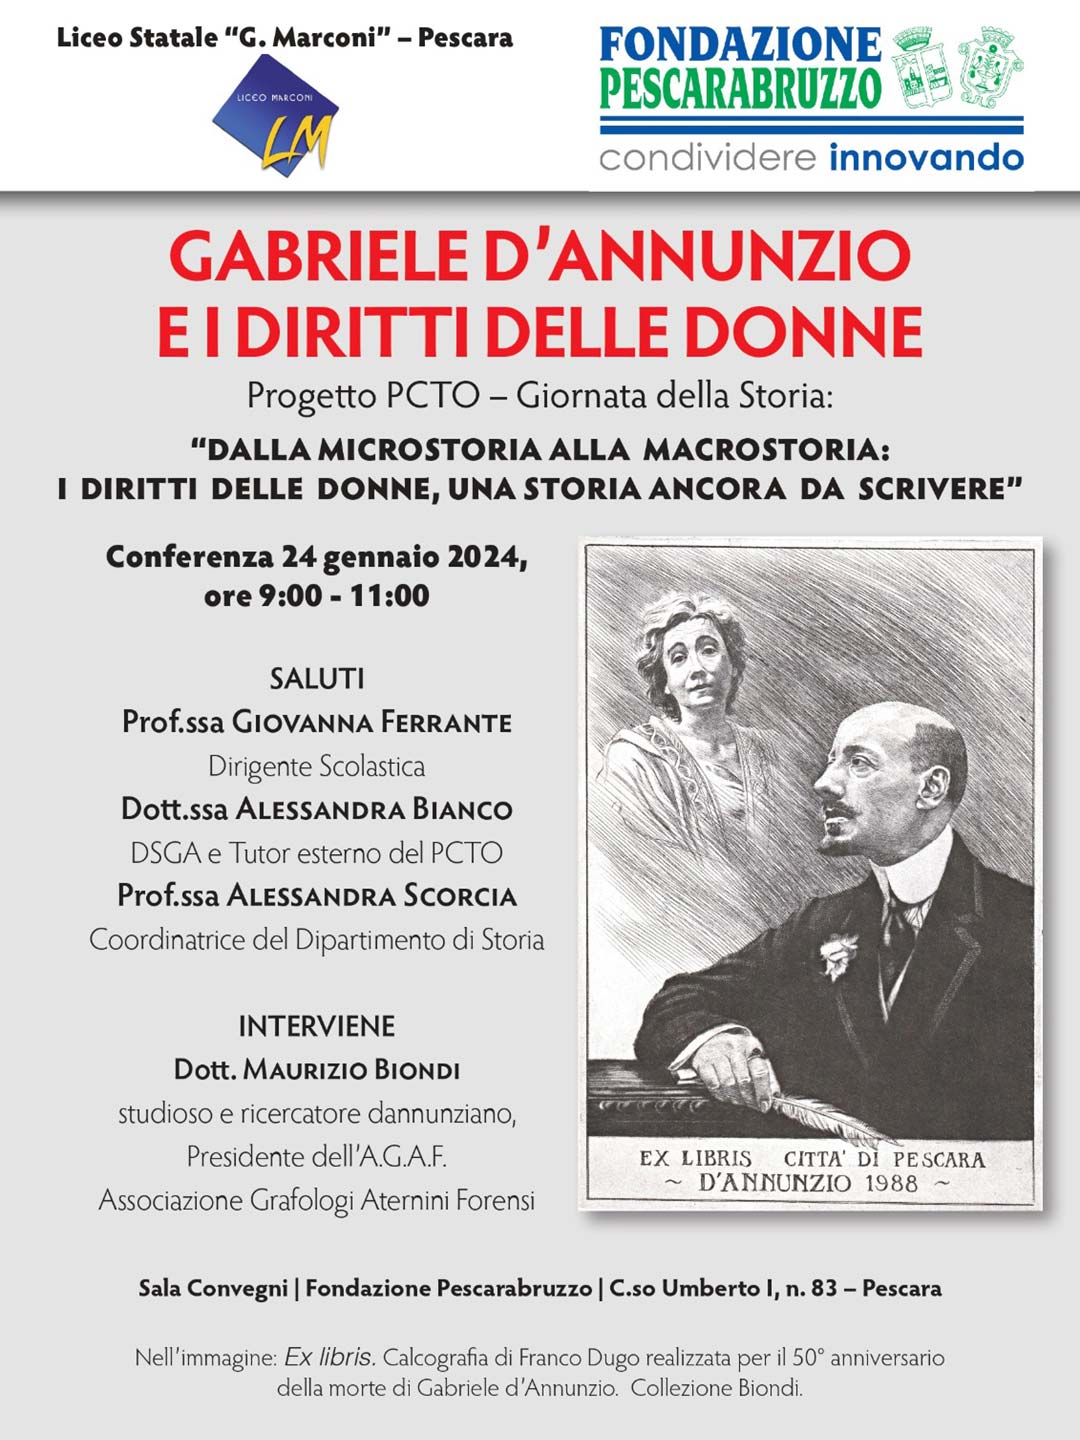 Conferenza "Gabriele d’Annunzio e i diritti delle donne" - incontro formativo con il Liceo Statale G. Marconi